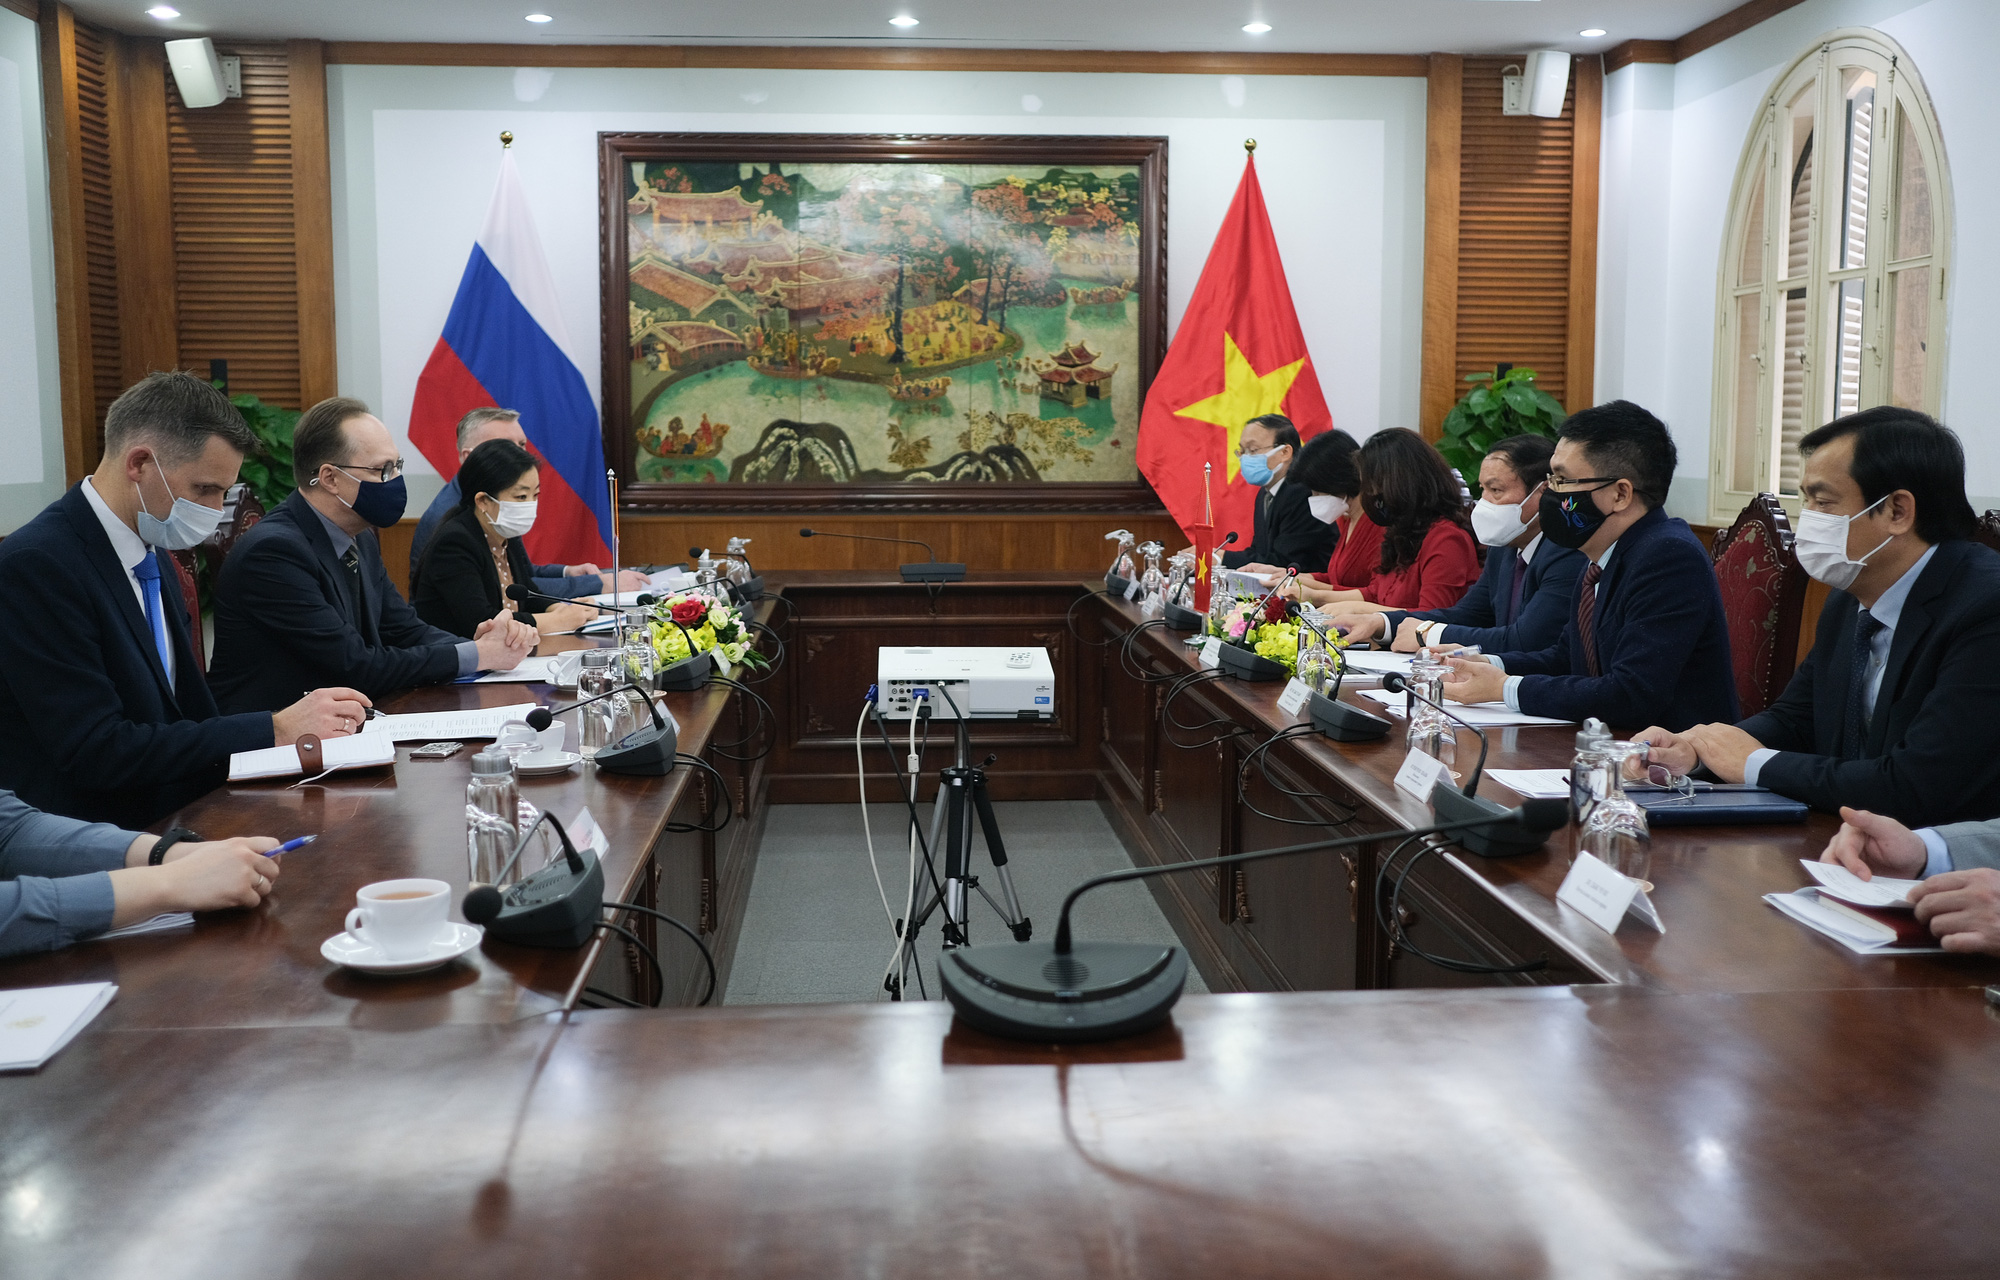 Bộ trưởng Nguyễn Văn Hùng: Văn hóa Nga có sức ảnh hưởng to lớn đến nhiều thế hệ của nhân dân Việt Nam - Ảnh 1.